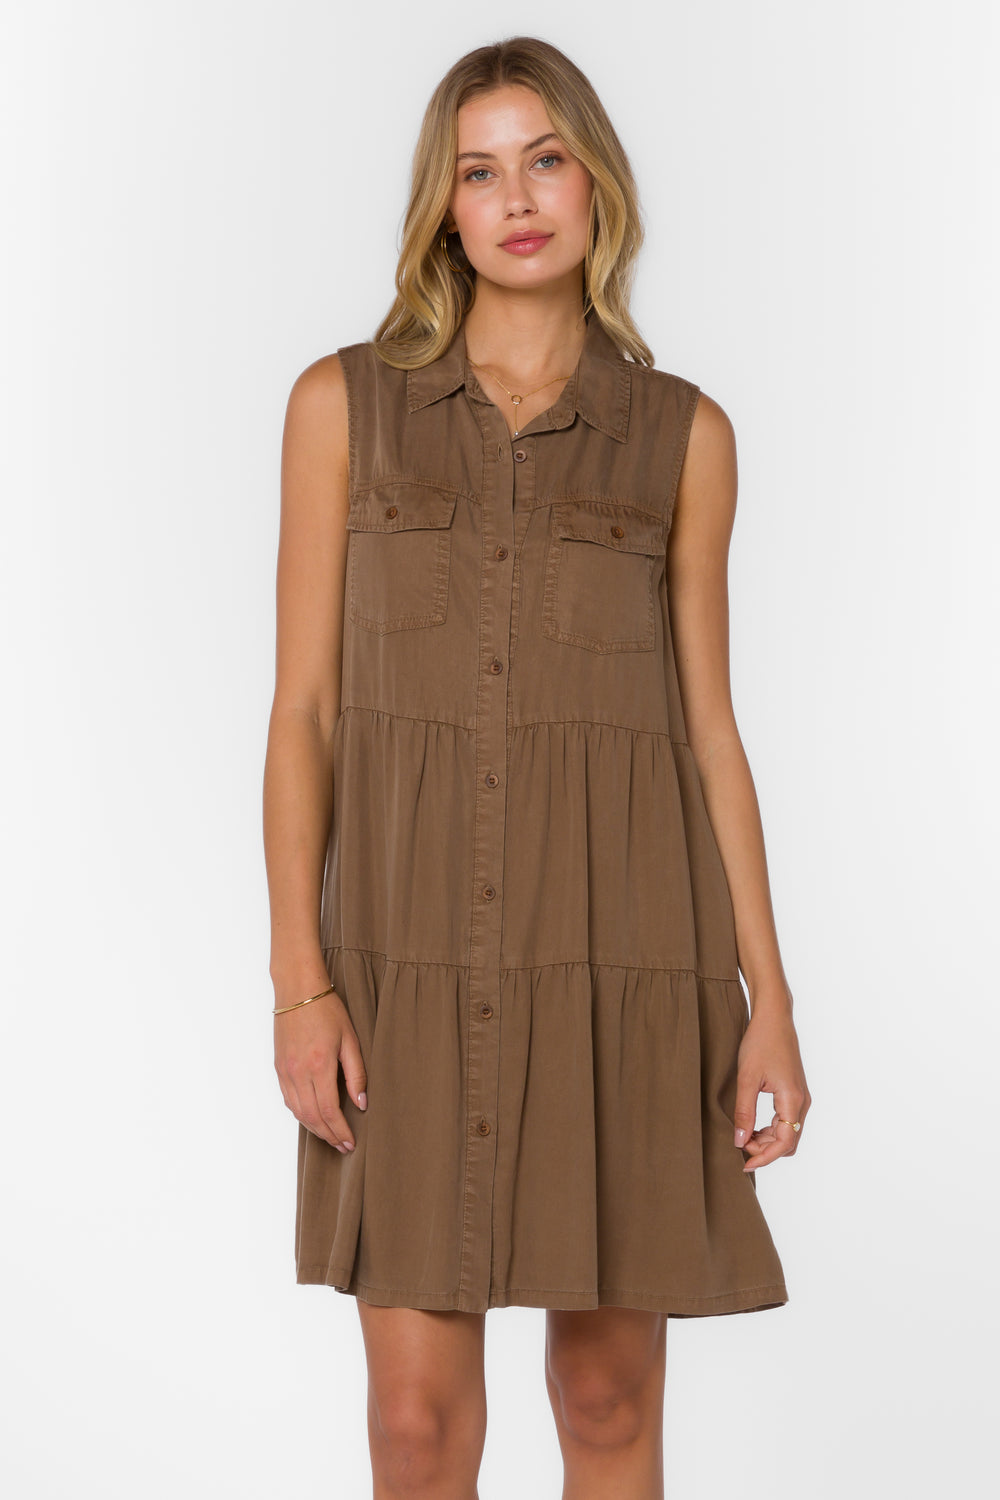 Collette Brown Dress - Dresses - Velvet Heart Clothing